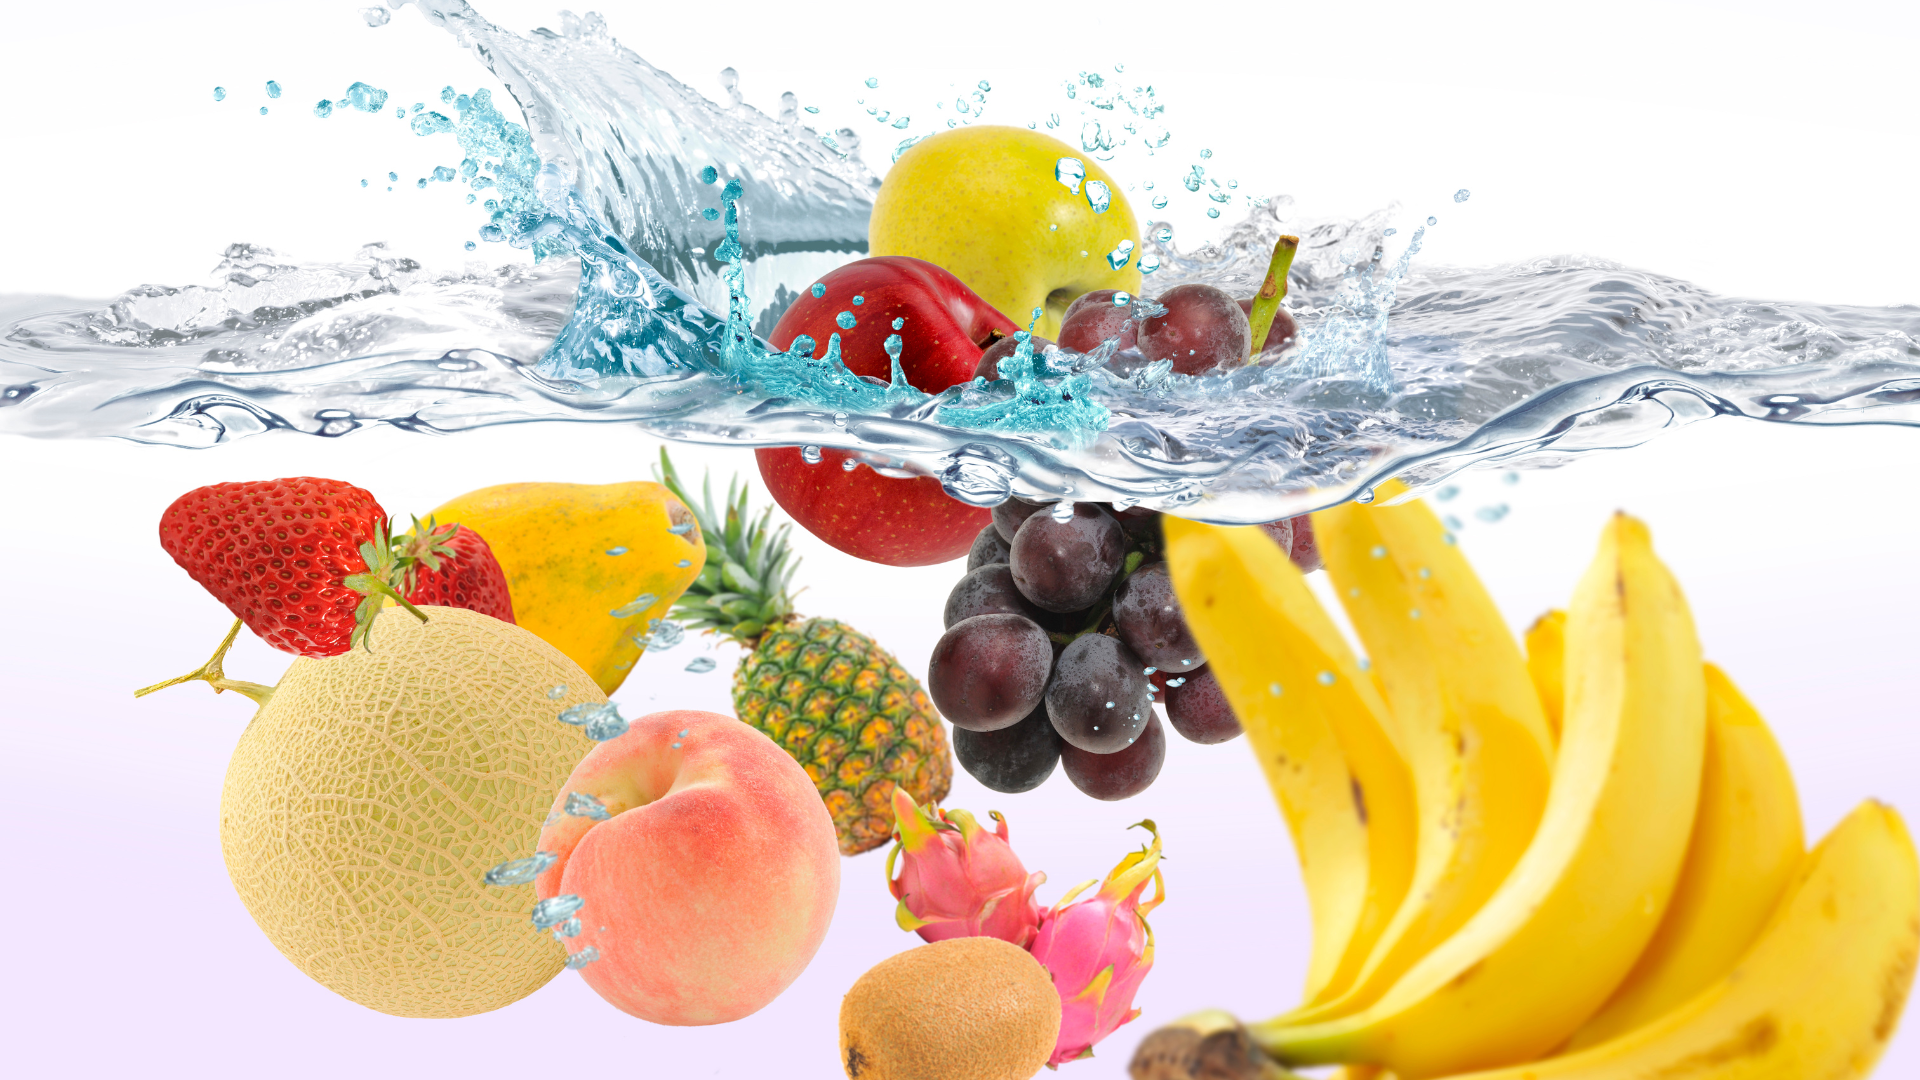 various fruits splashing into water.